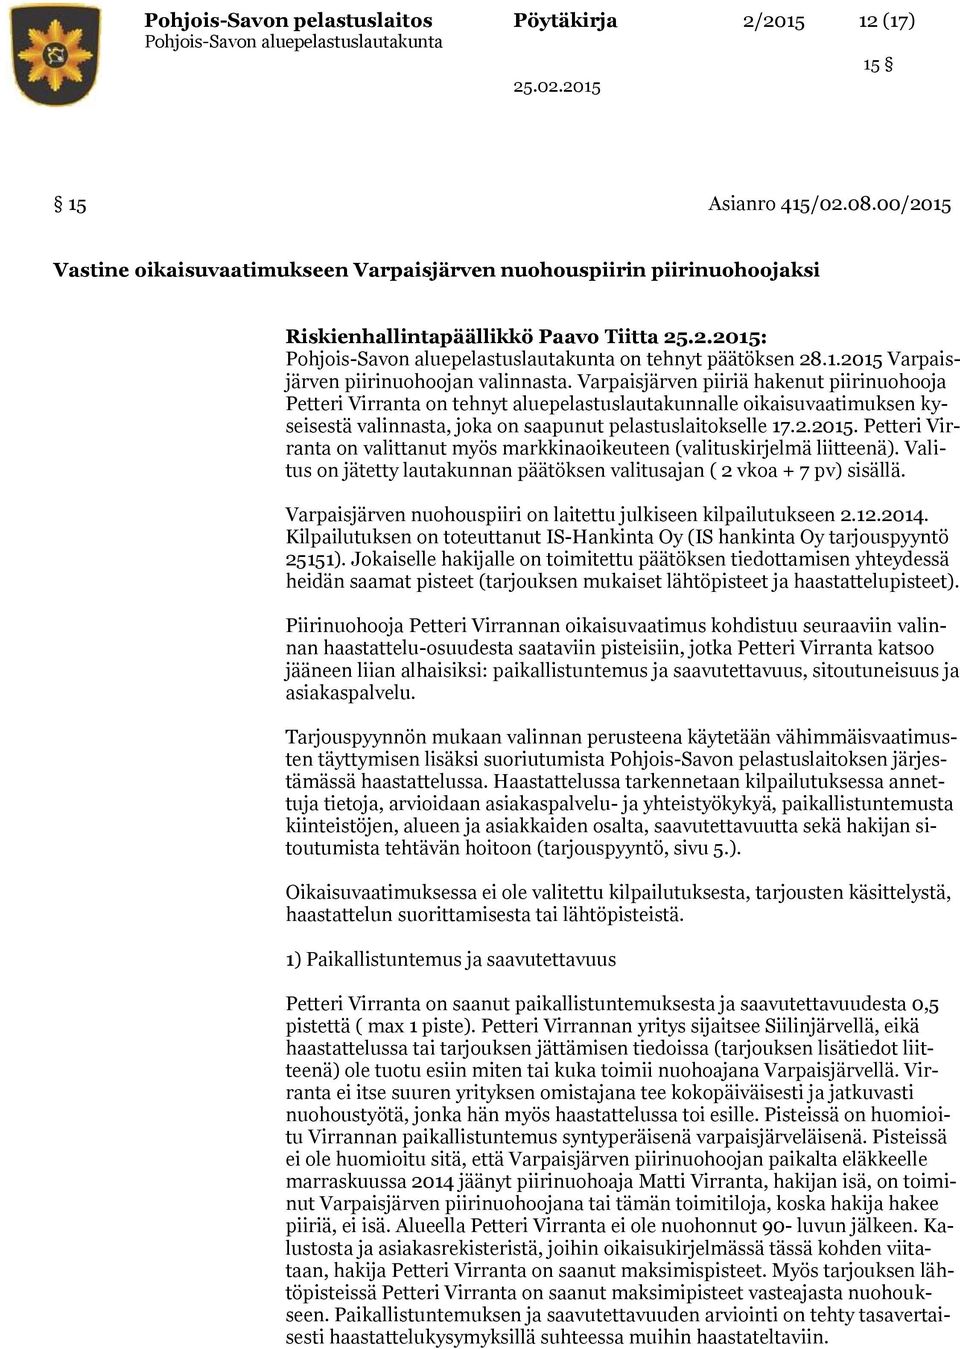 Varpaisjärven piiriä hakenut piirinuohooja Petteri Virranta on tehnyt aluepelastuslautakunnalle oikaisuvaatimuksen kyseisestä valinnasta, joka on saapunut pelastuslaitokselle 17.2.2015.